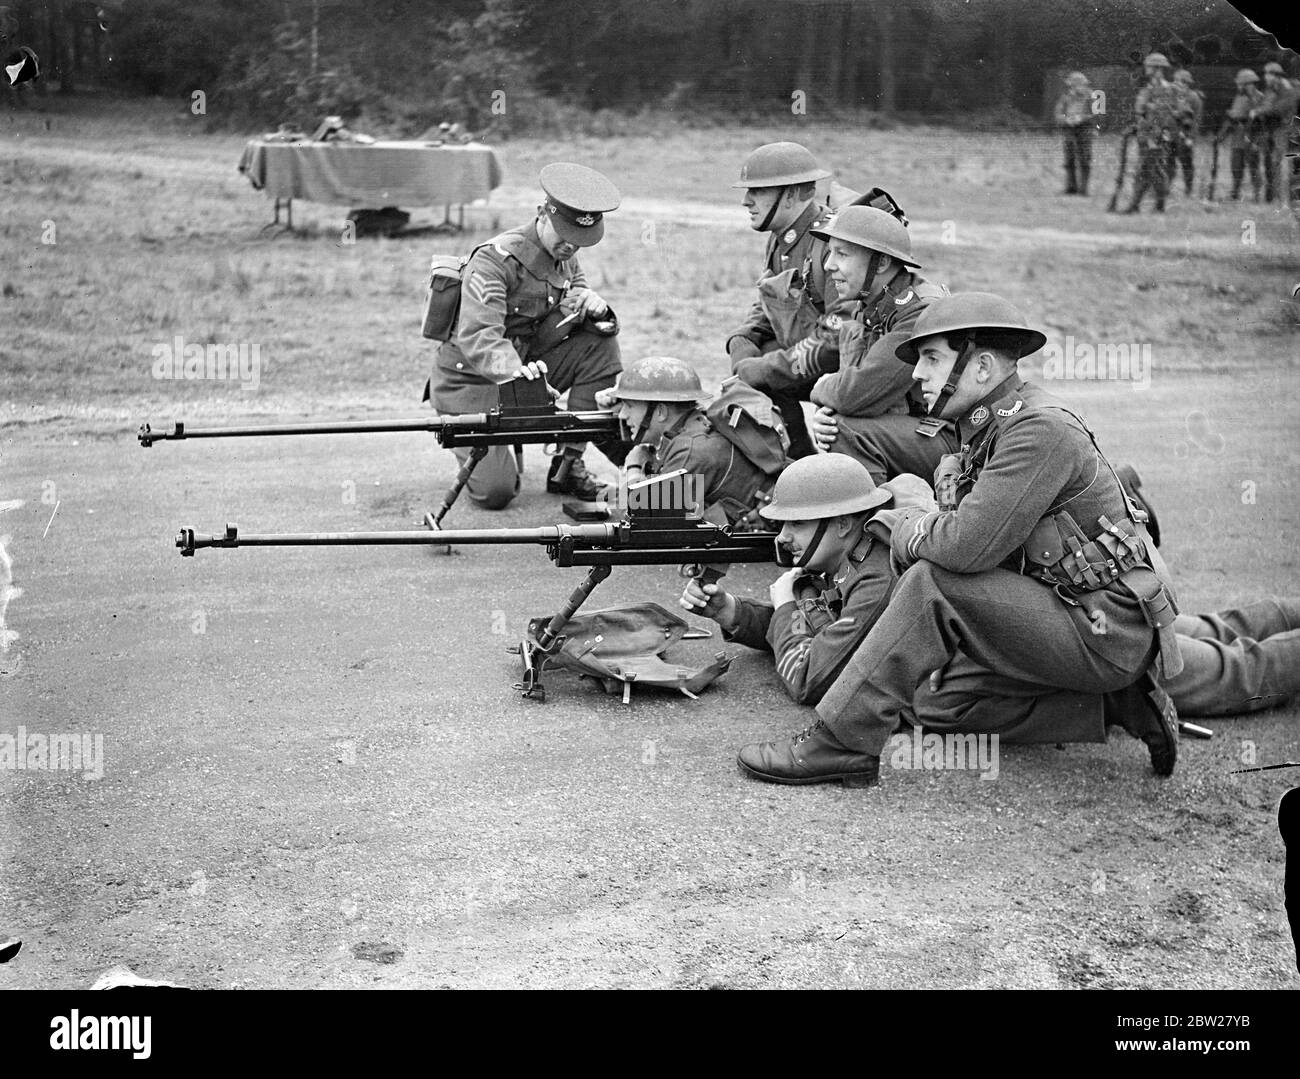 Nouveau fusil anti-char lors de la démonstration d'Aldershot. Les derniers équipements et l'entraînement des détachements d'infanterie de l'armée britannique ont été démontrés par le 1er Batalion le South Staffordshire Regiment dans une série d'exercices au camp d'Aldershot, Hampshire. Expositions de photos, le 'Boys anti-Tank Rifle' en cours de démonstration. Le fusil est de 0,55 et le magazine tient cinq tours. 21 janvier 1938 Banque D'Images